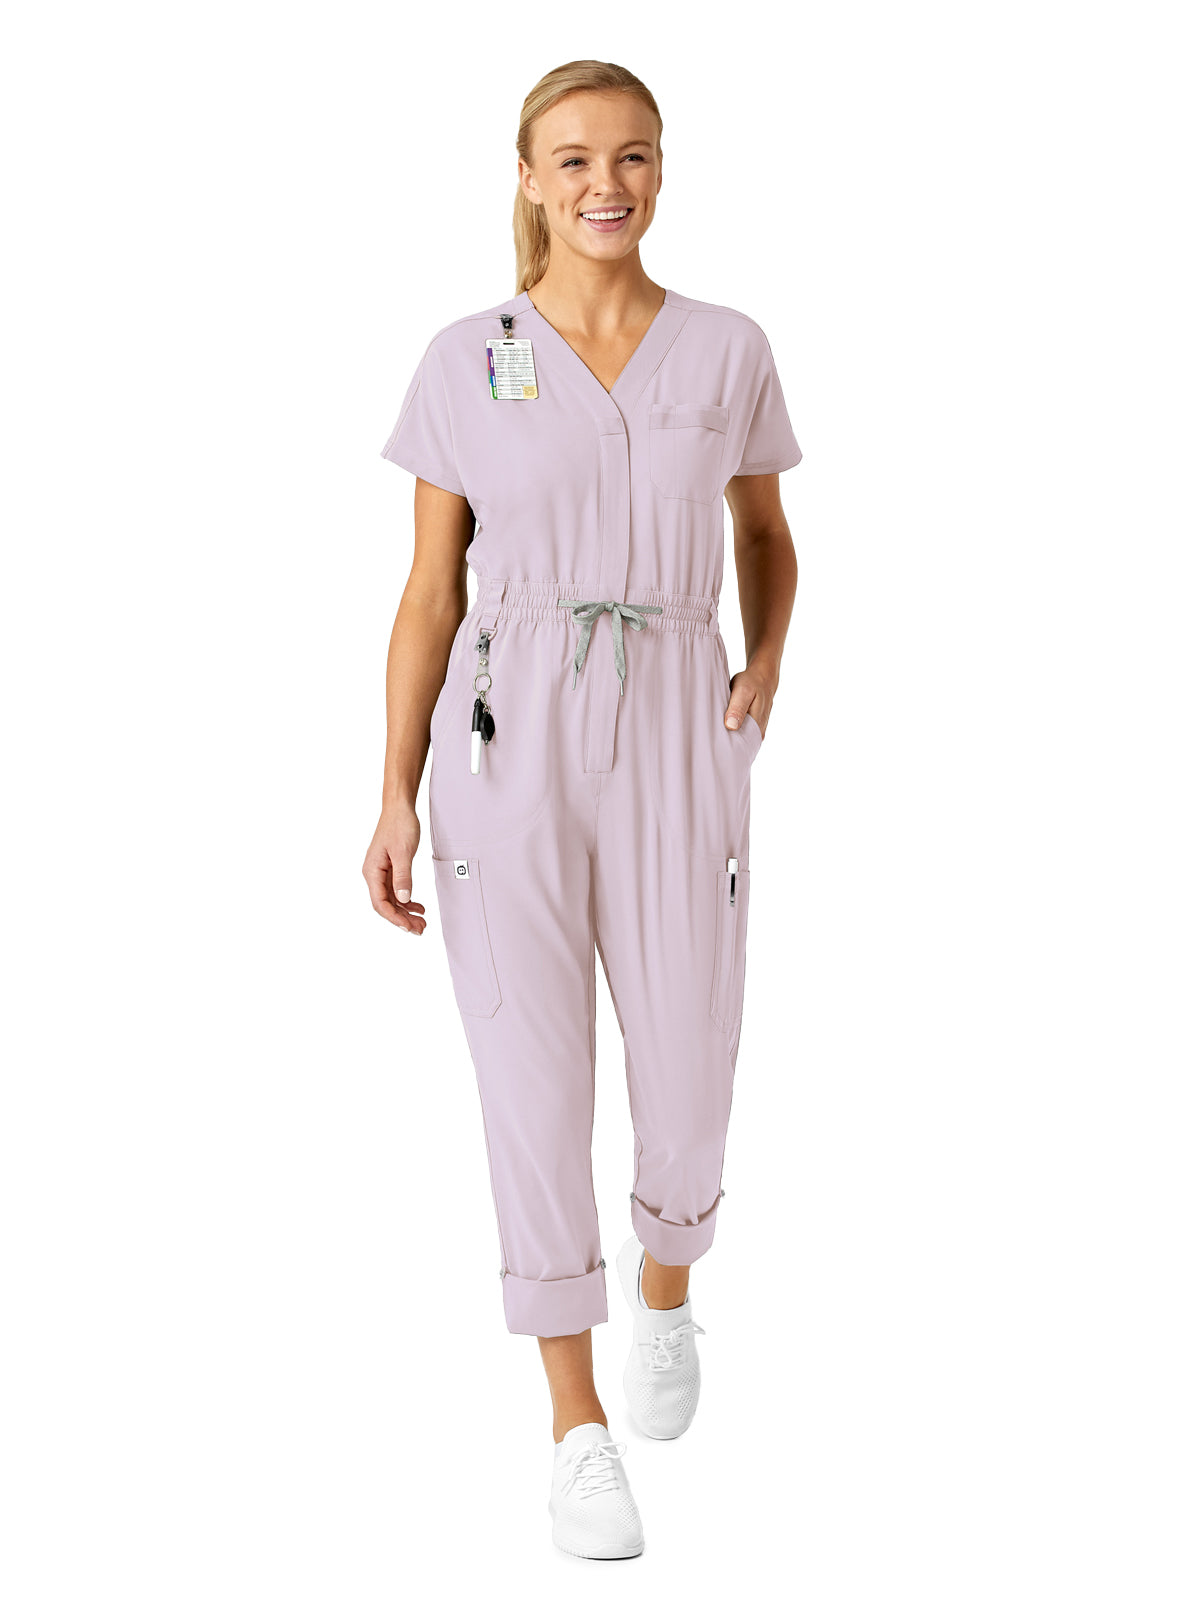 Women's Zip Front Jumpsuit - 3134 - Pastel Lilac